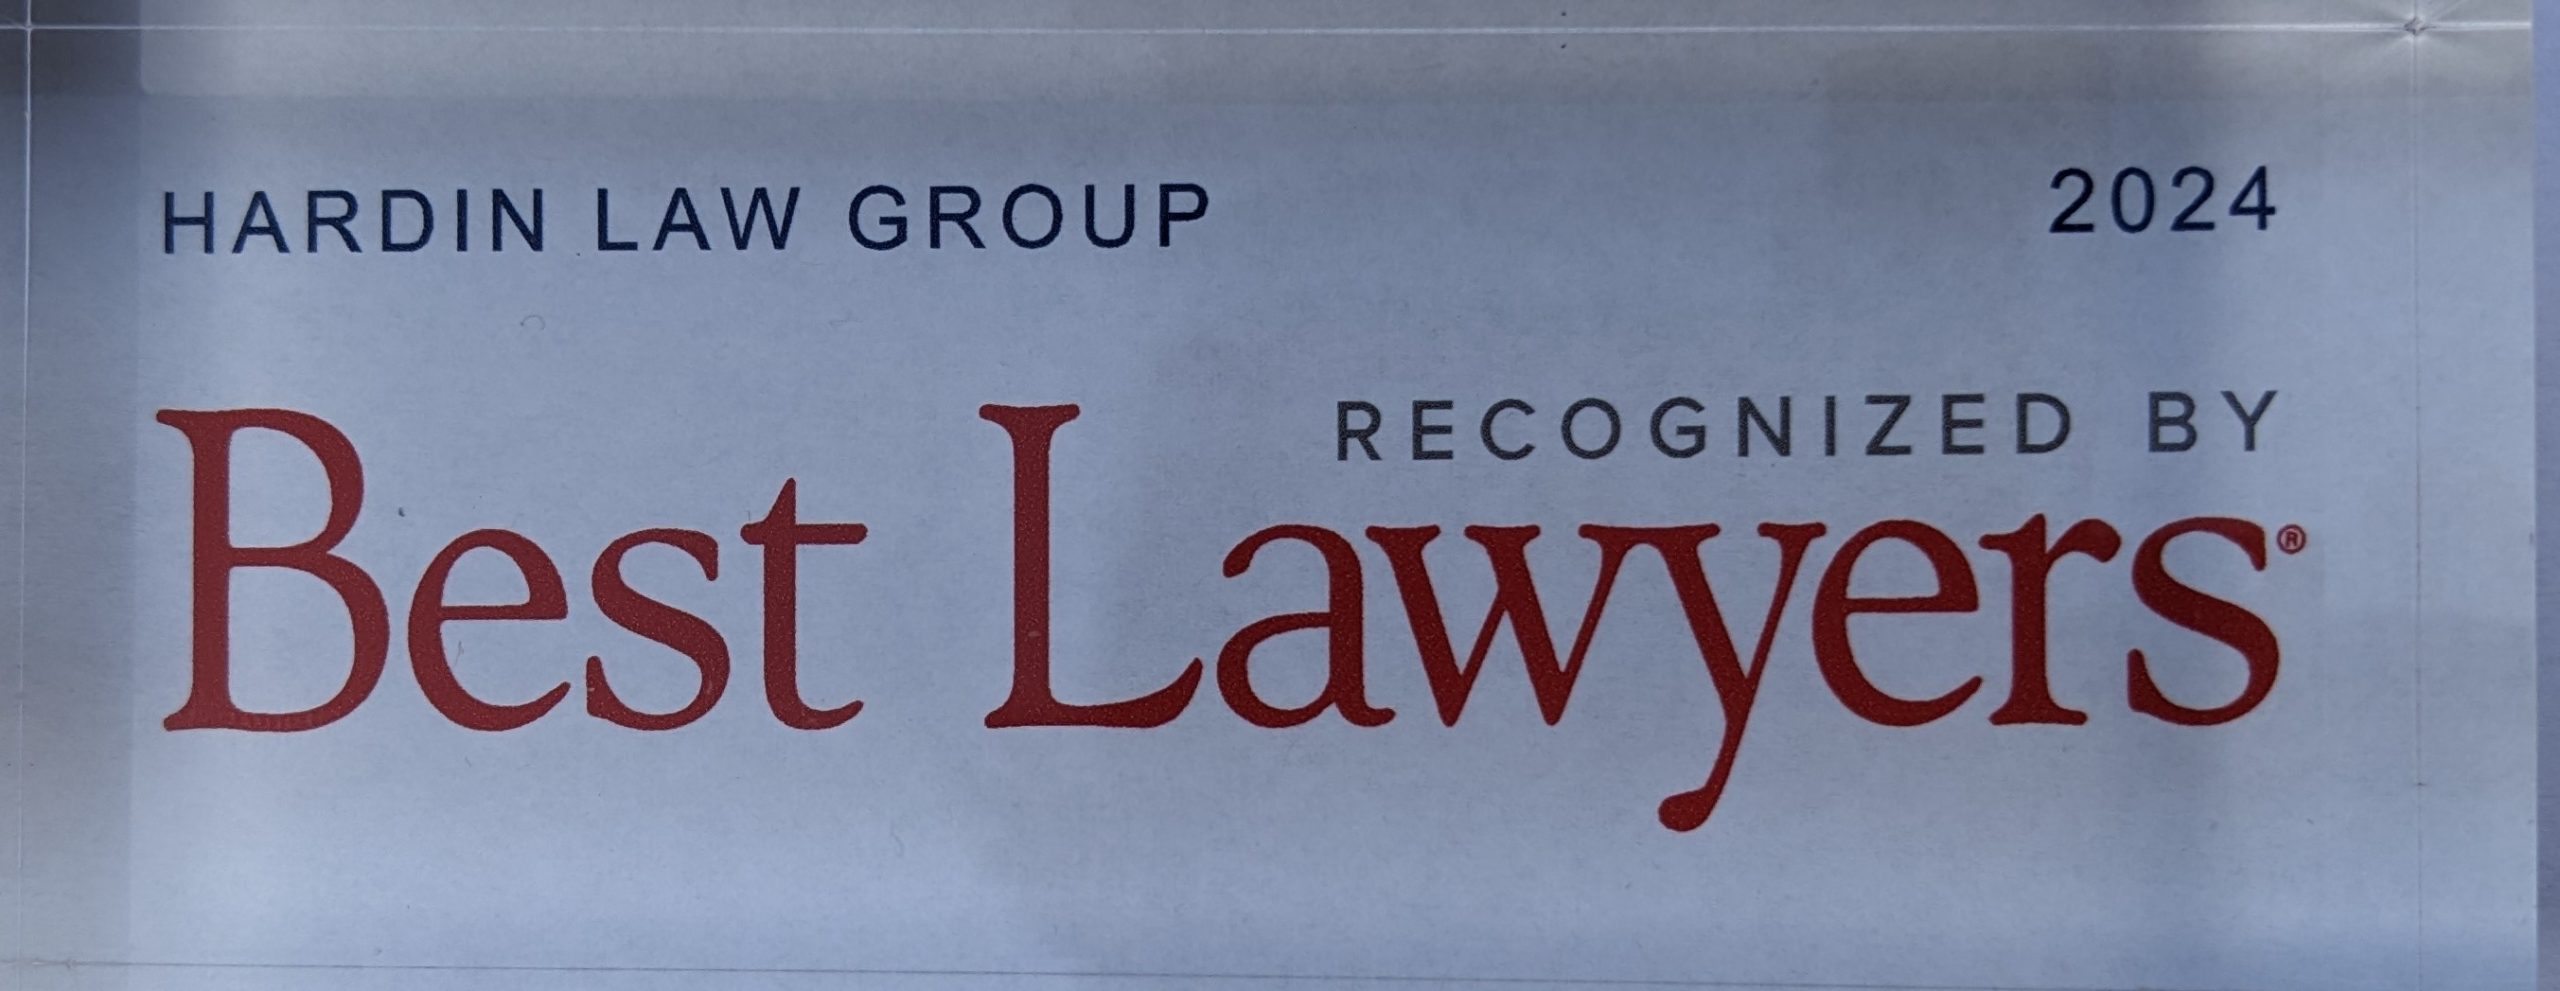 Best Lawyers Hardin Law Group